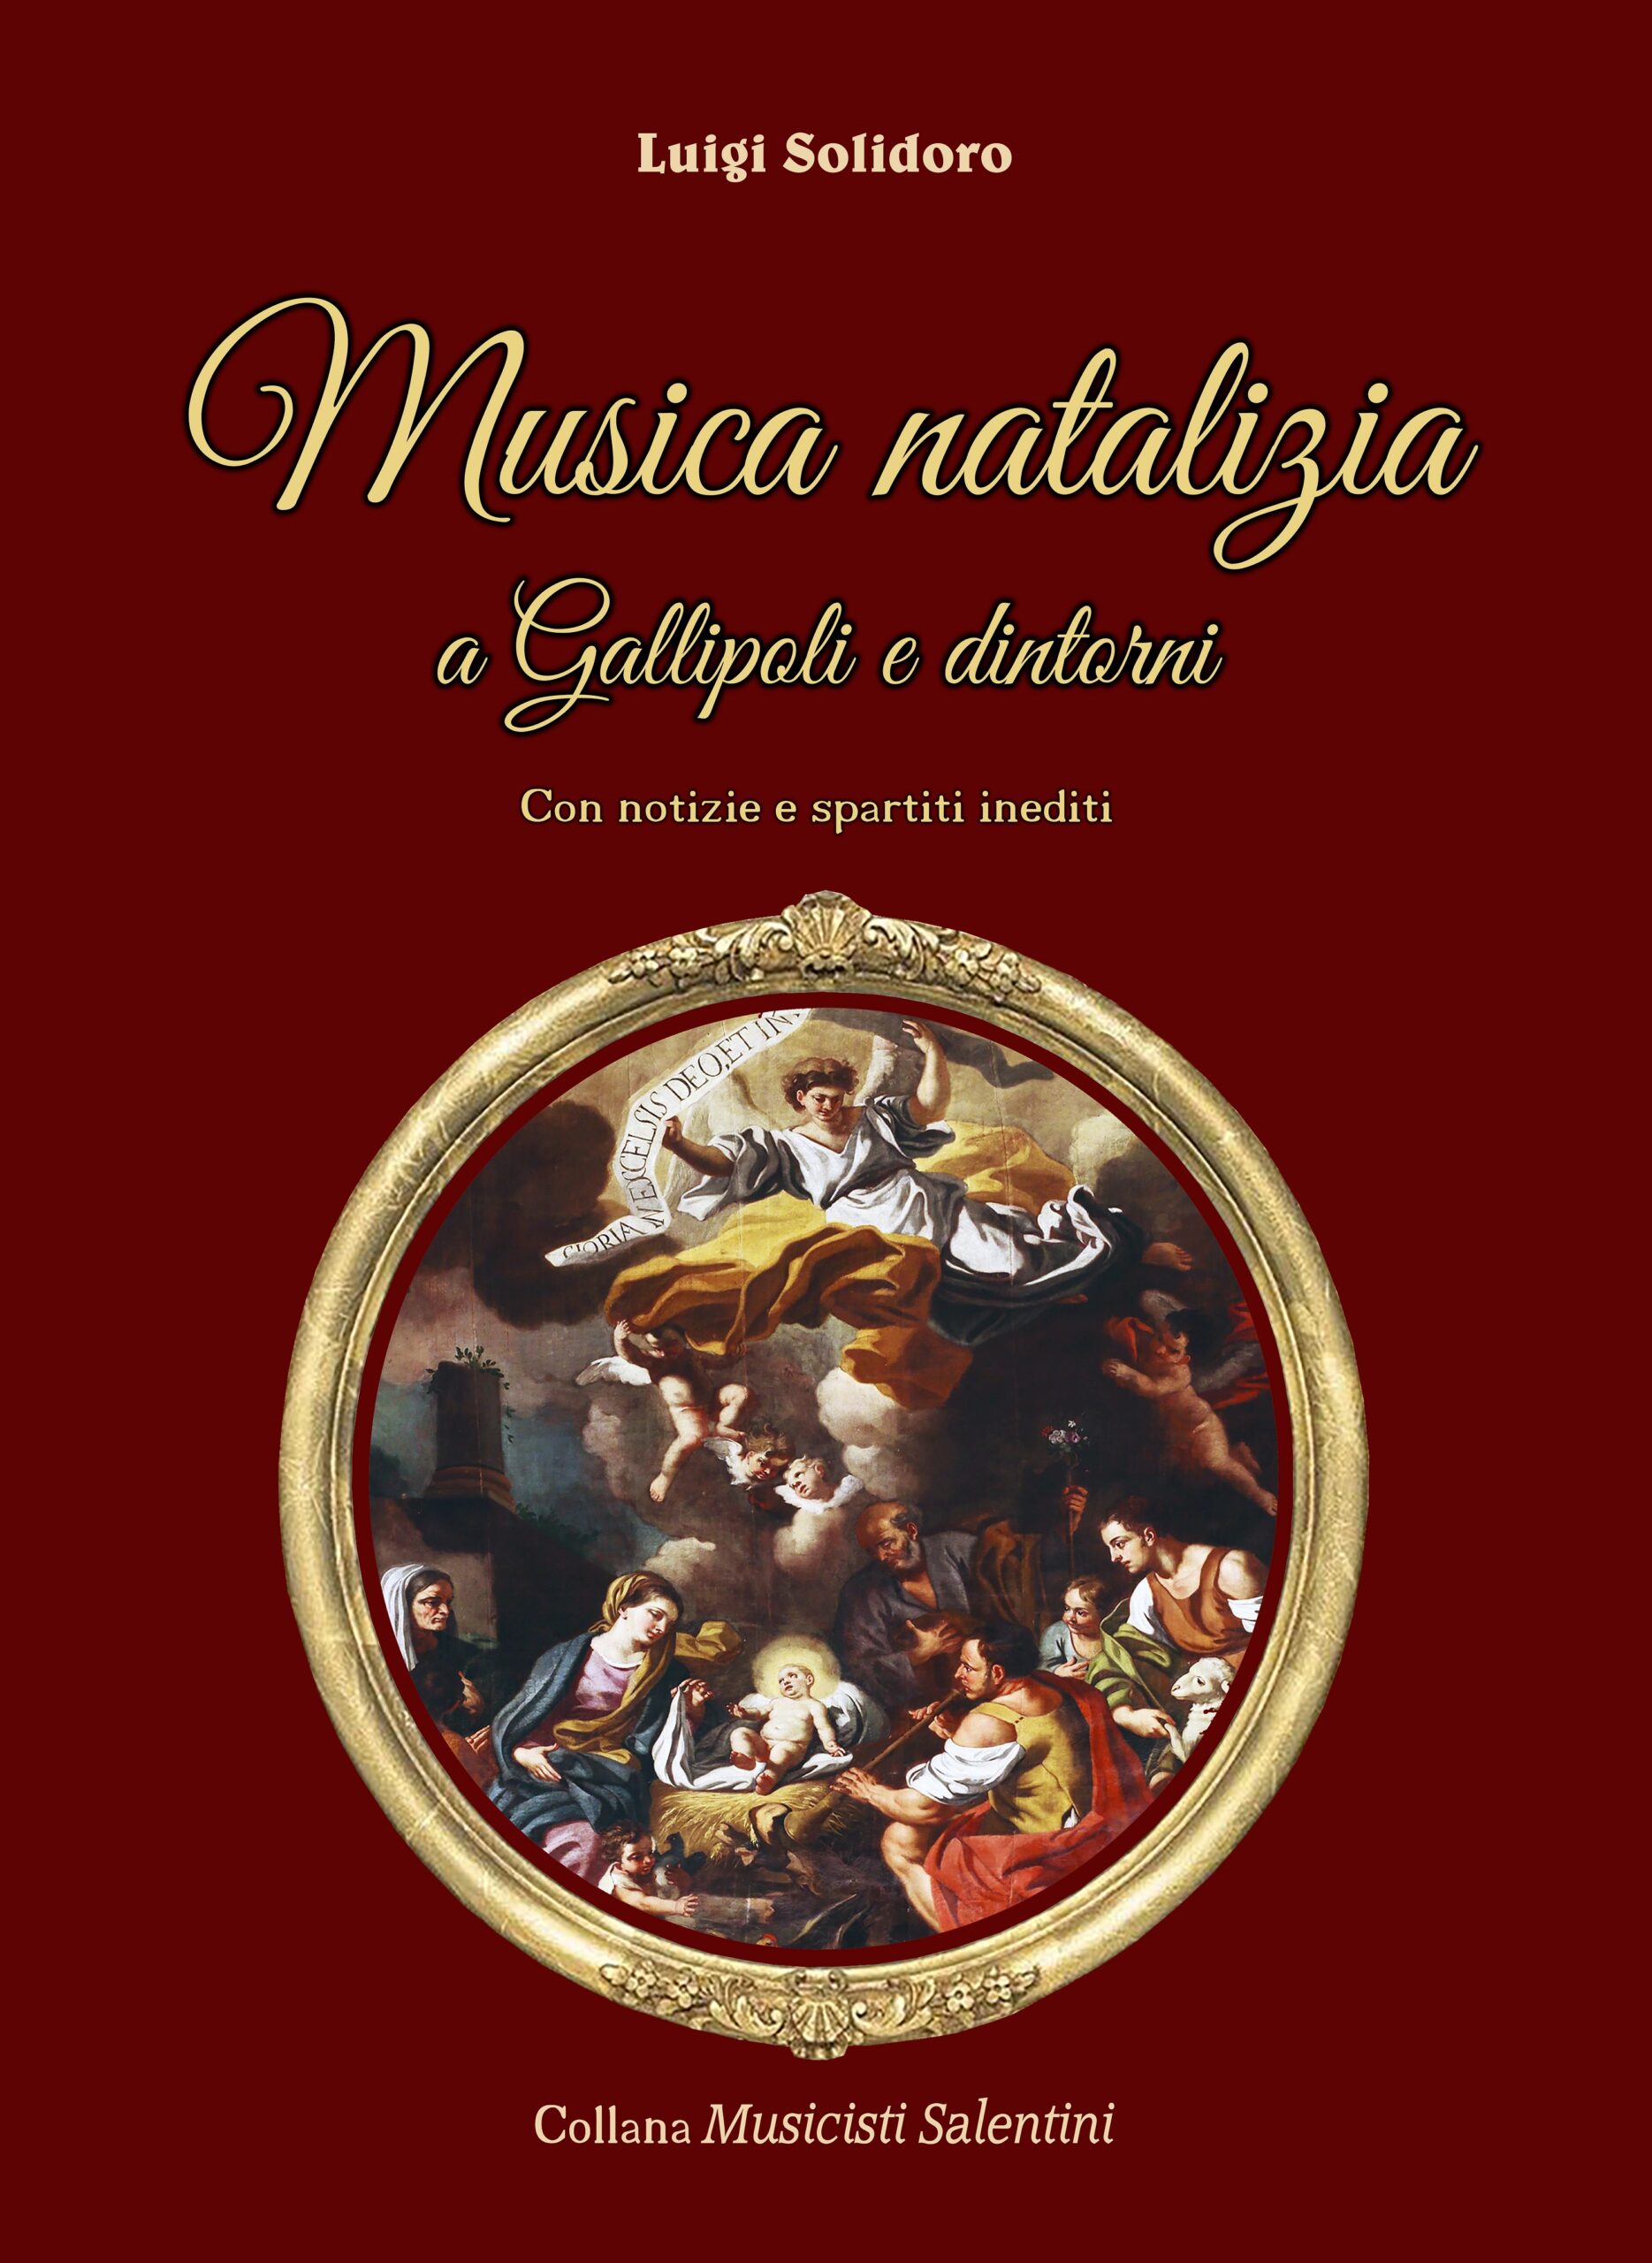 copertina libro di Luigi Solidoro "Musica natalizia a Gallipoli e dintorni"